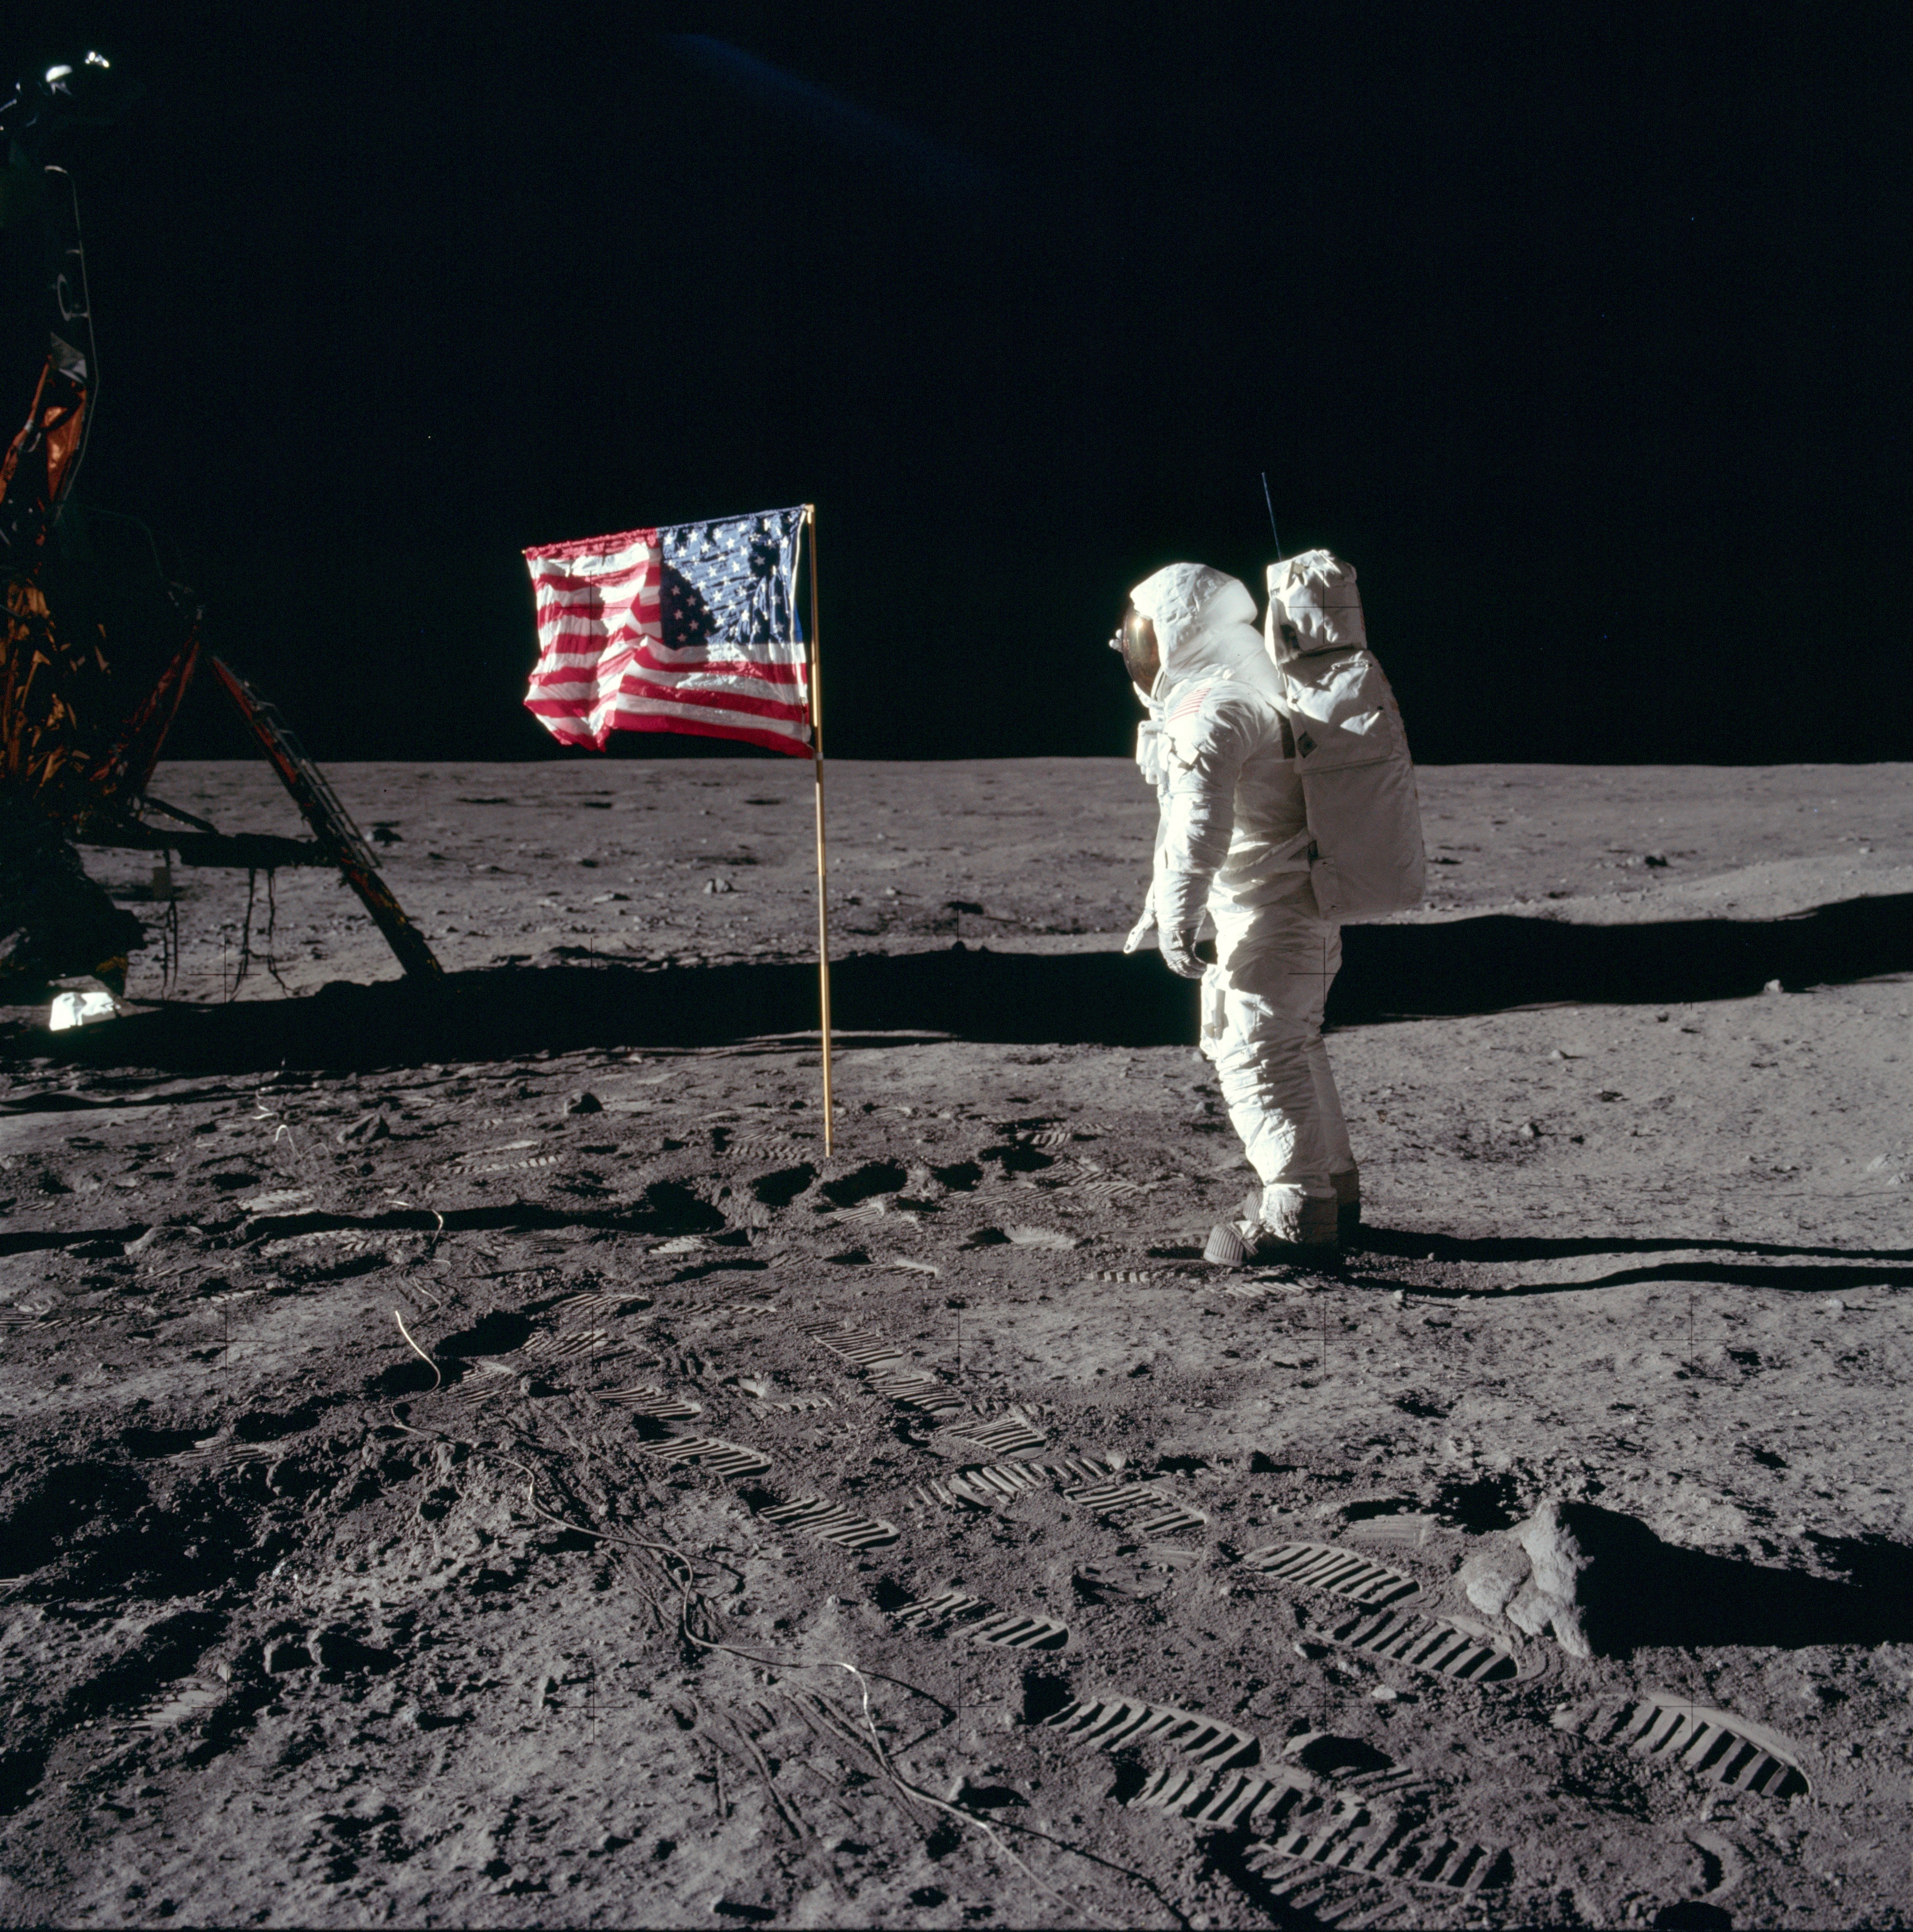 Базз Олдрин в скафандре на поверхности Луны рядом с флагом США.